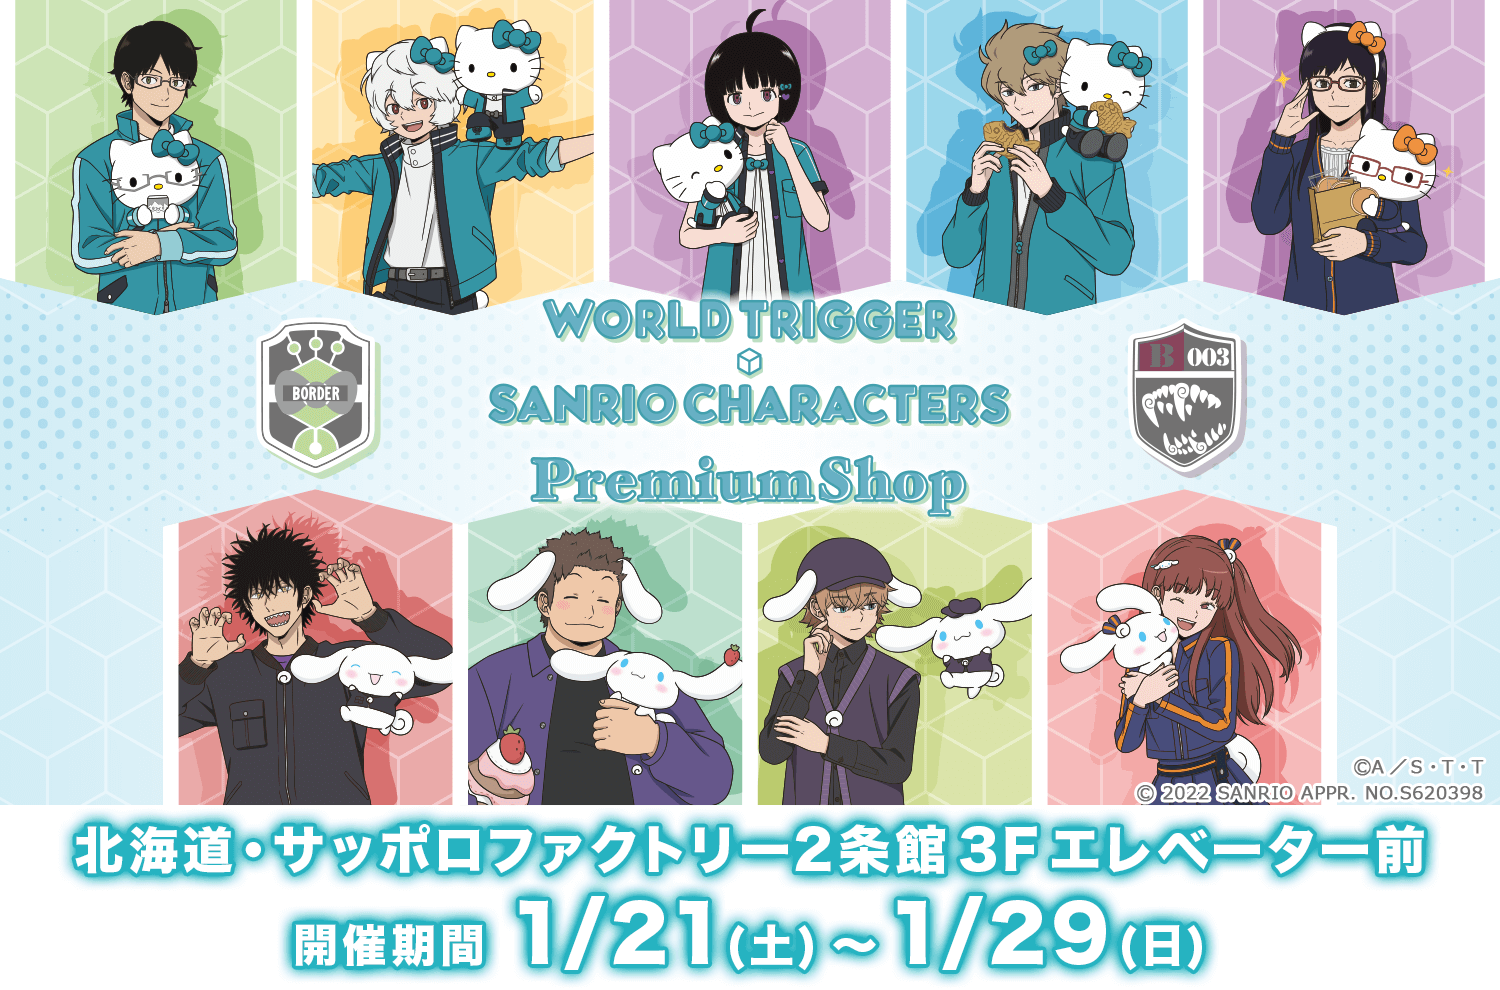 『ワールドトリガー×サンリオキャラクターズ PremiumShop』が北海道・札幌へ初出展決定！